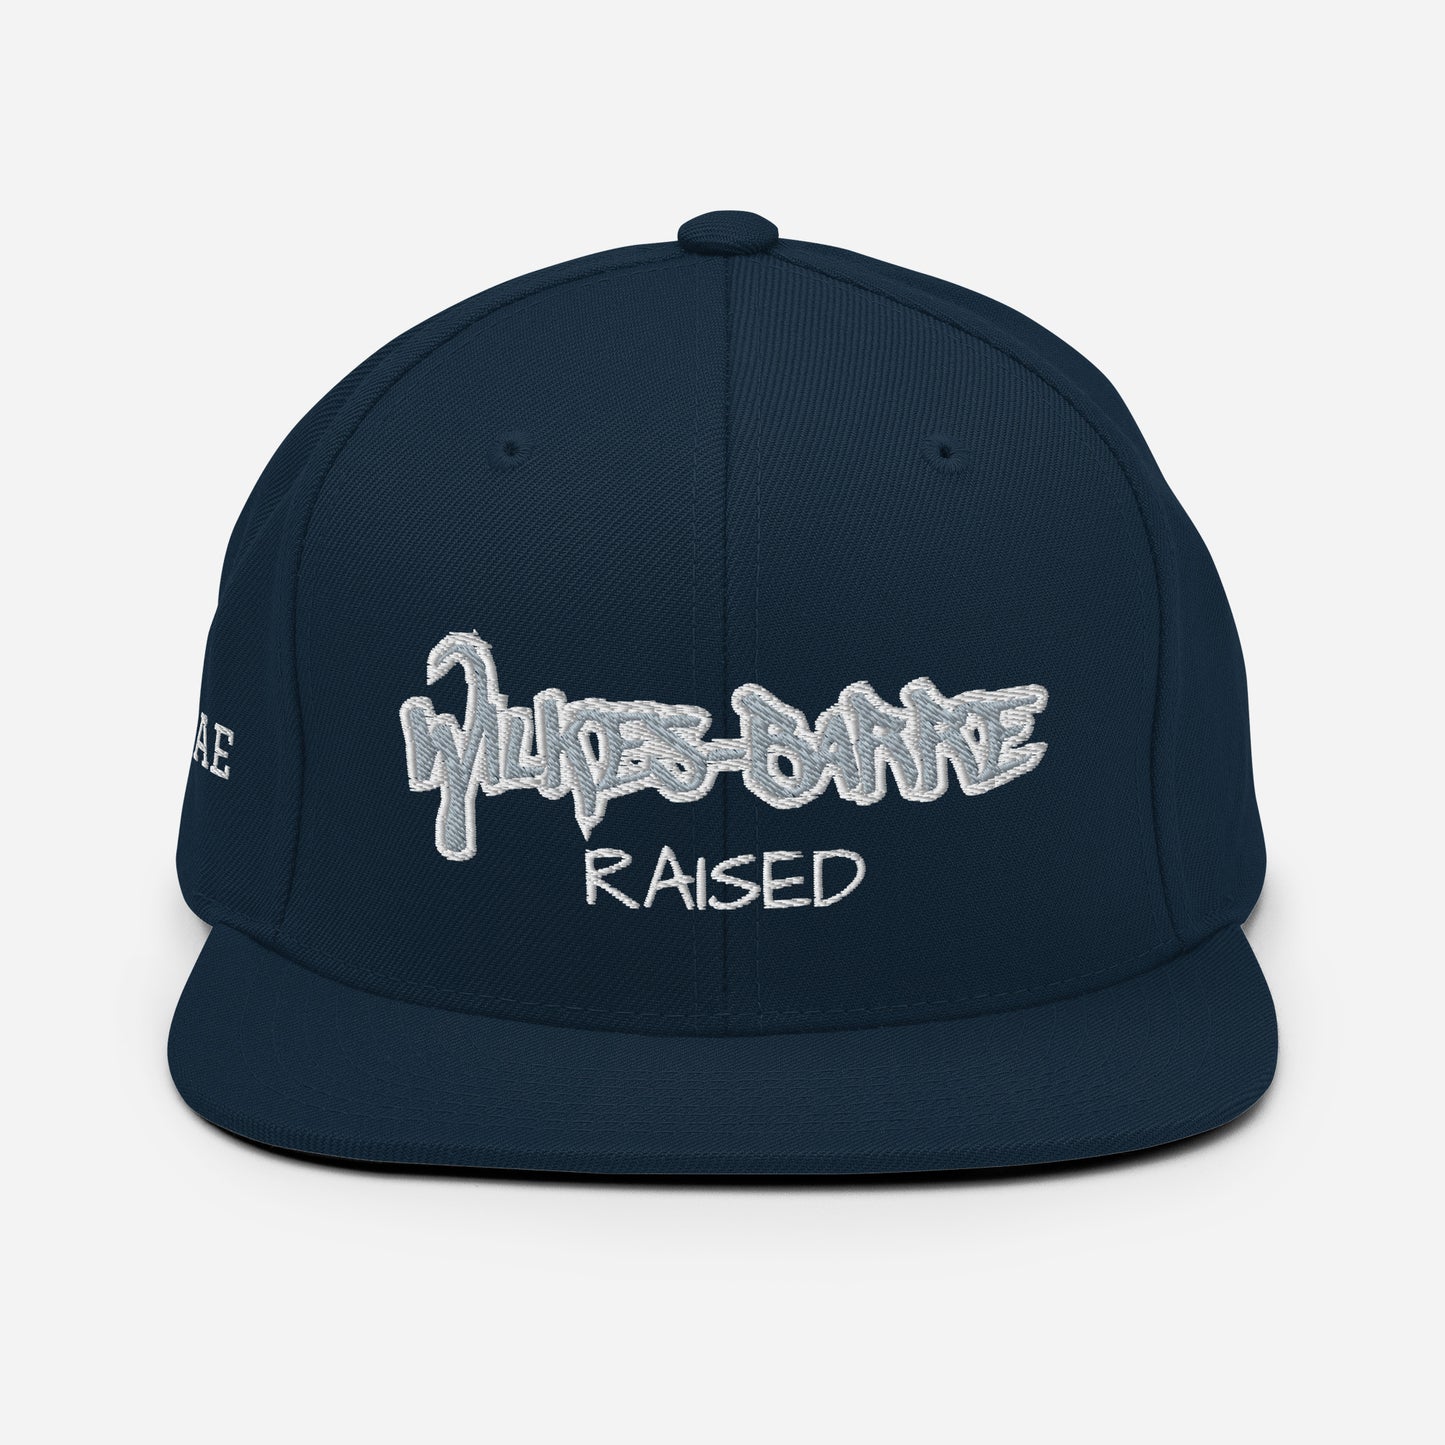 Wilkes- Barre Raised Snapback Hat